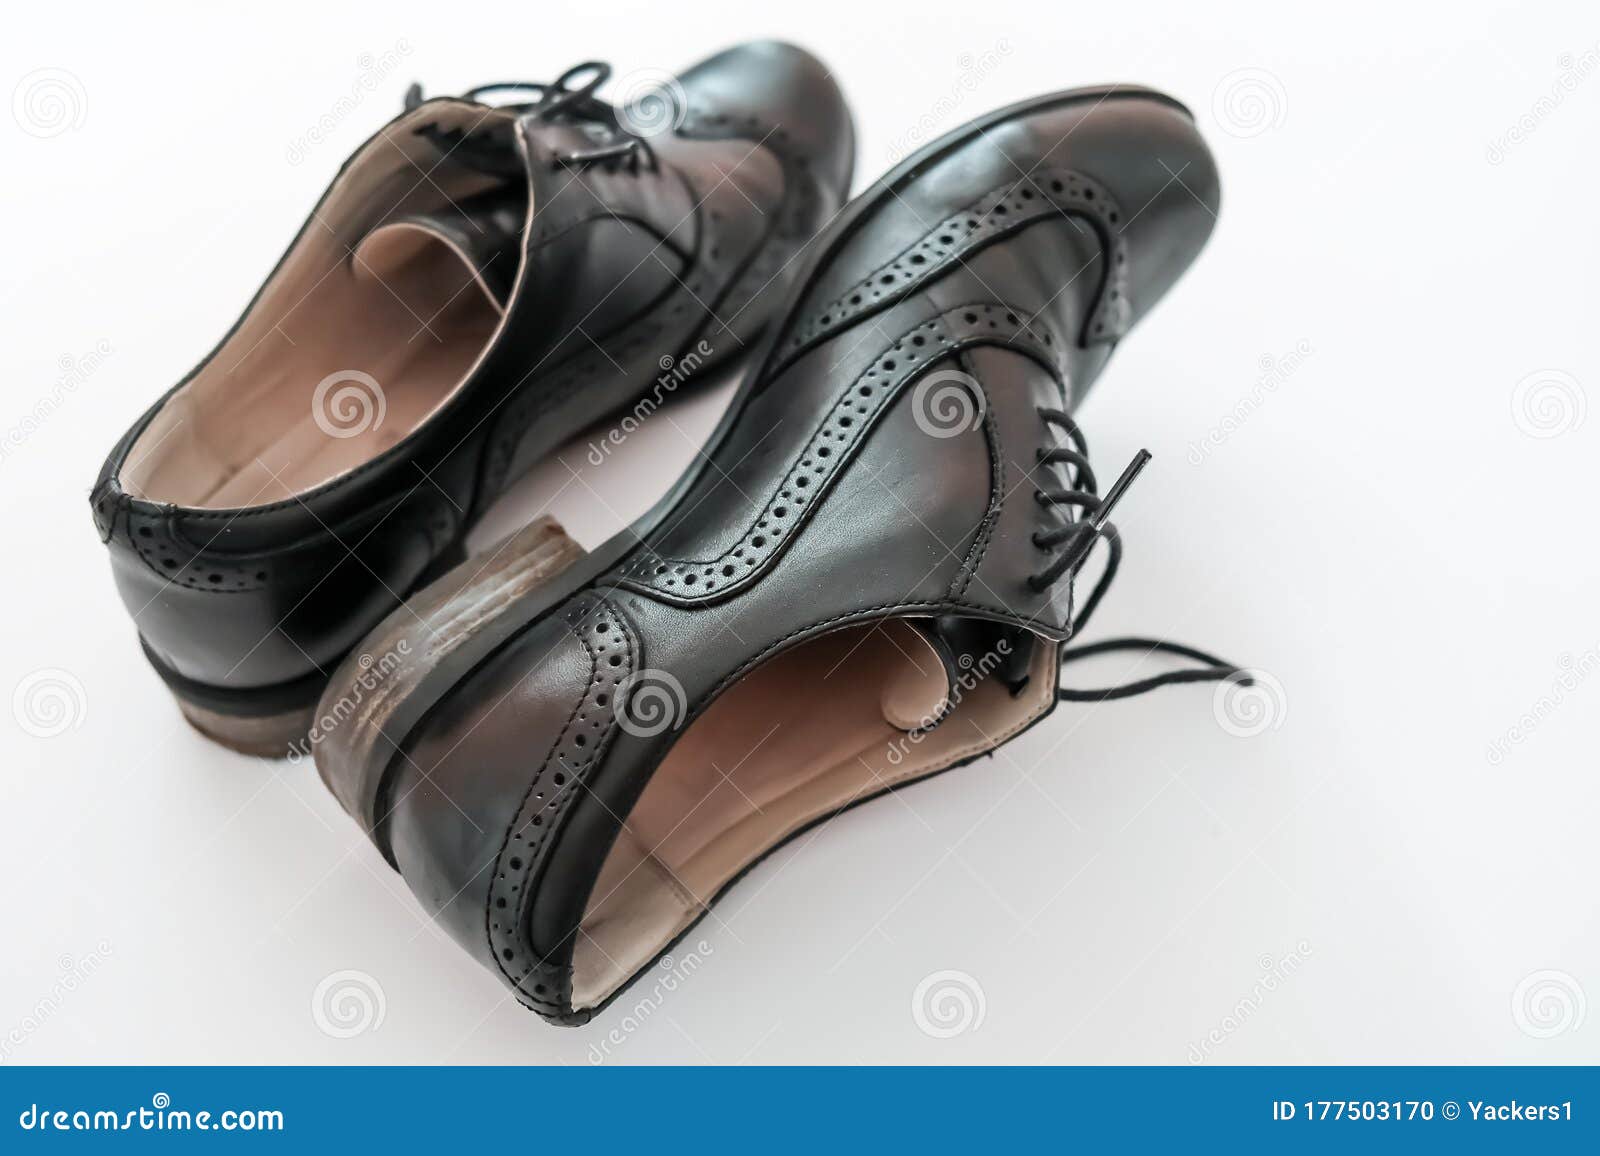 plain black leather shoes womens